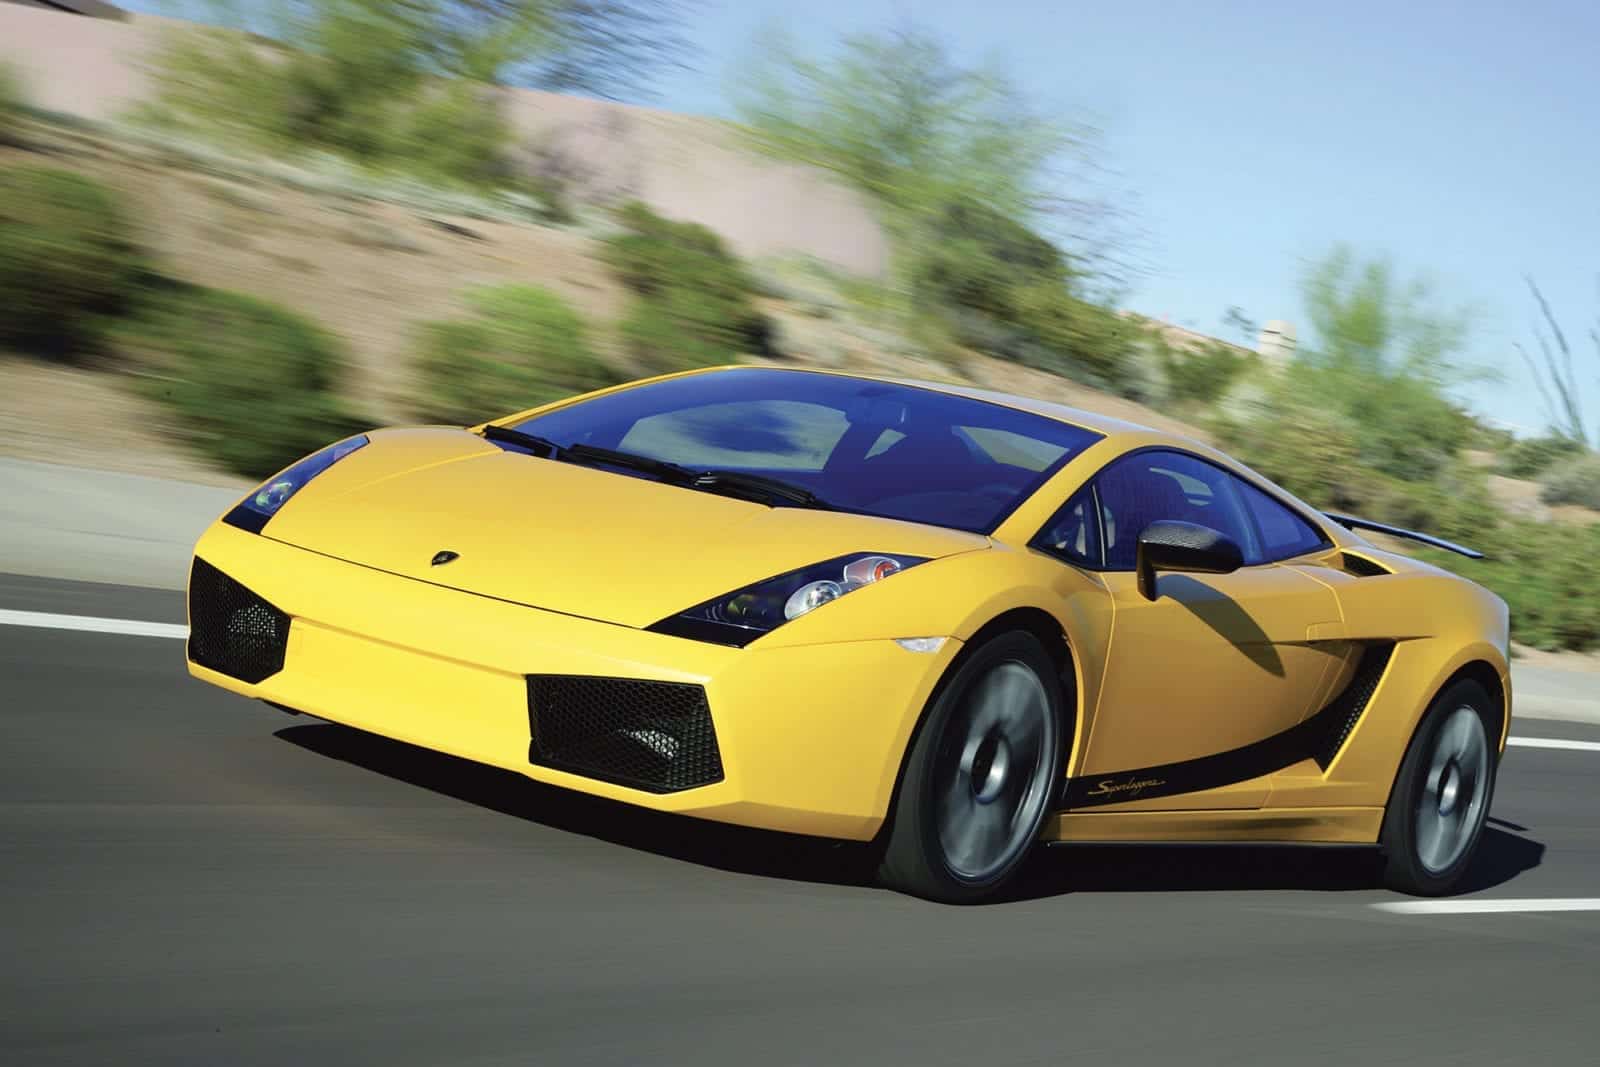 Yellow Lamborghini Gallardo on the road